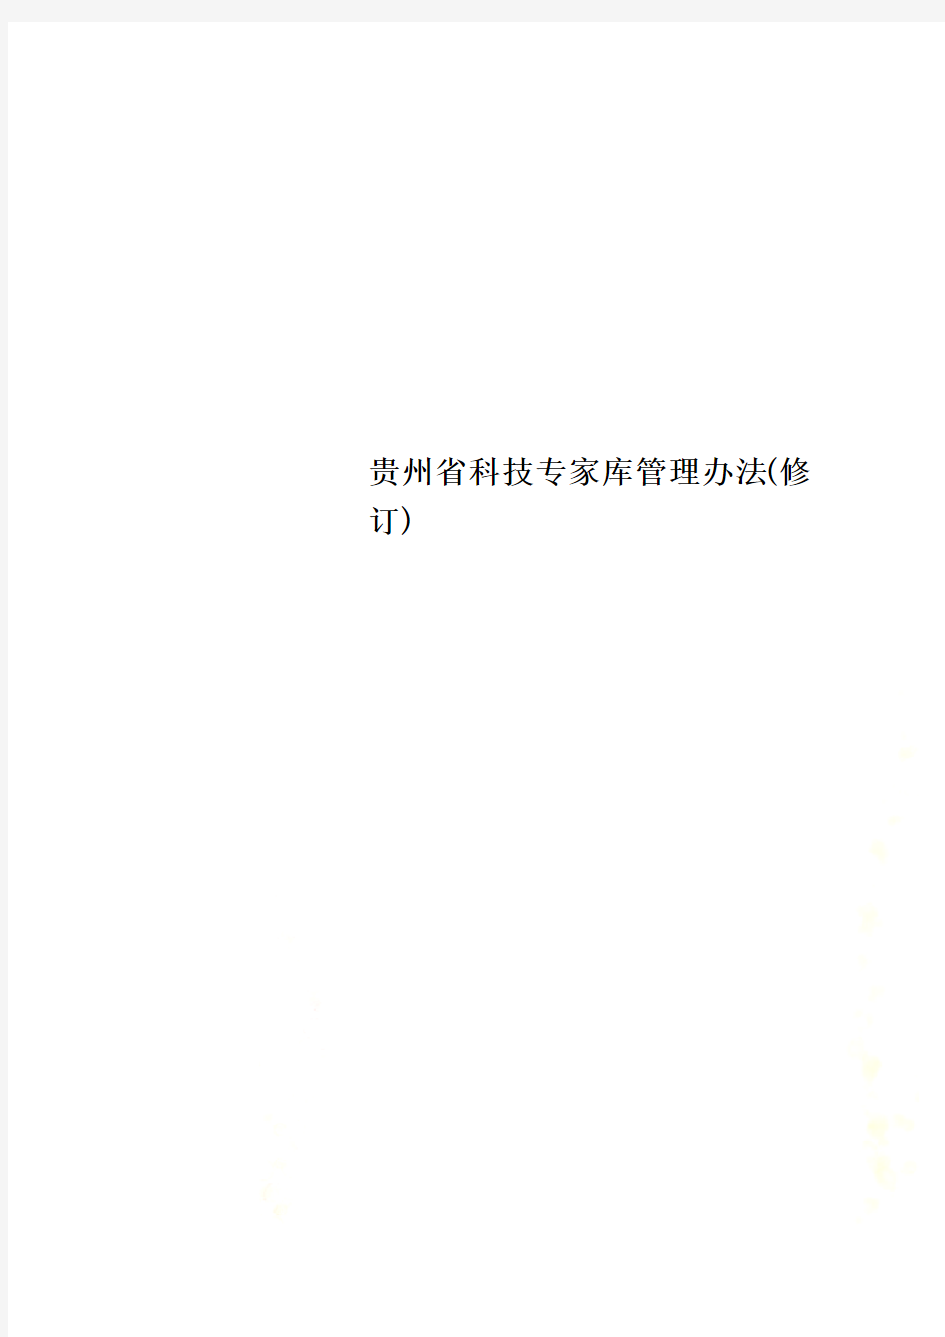 贵州省科技专家库管理办法(修订)